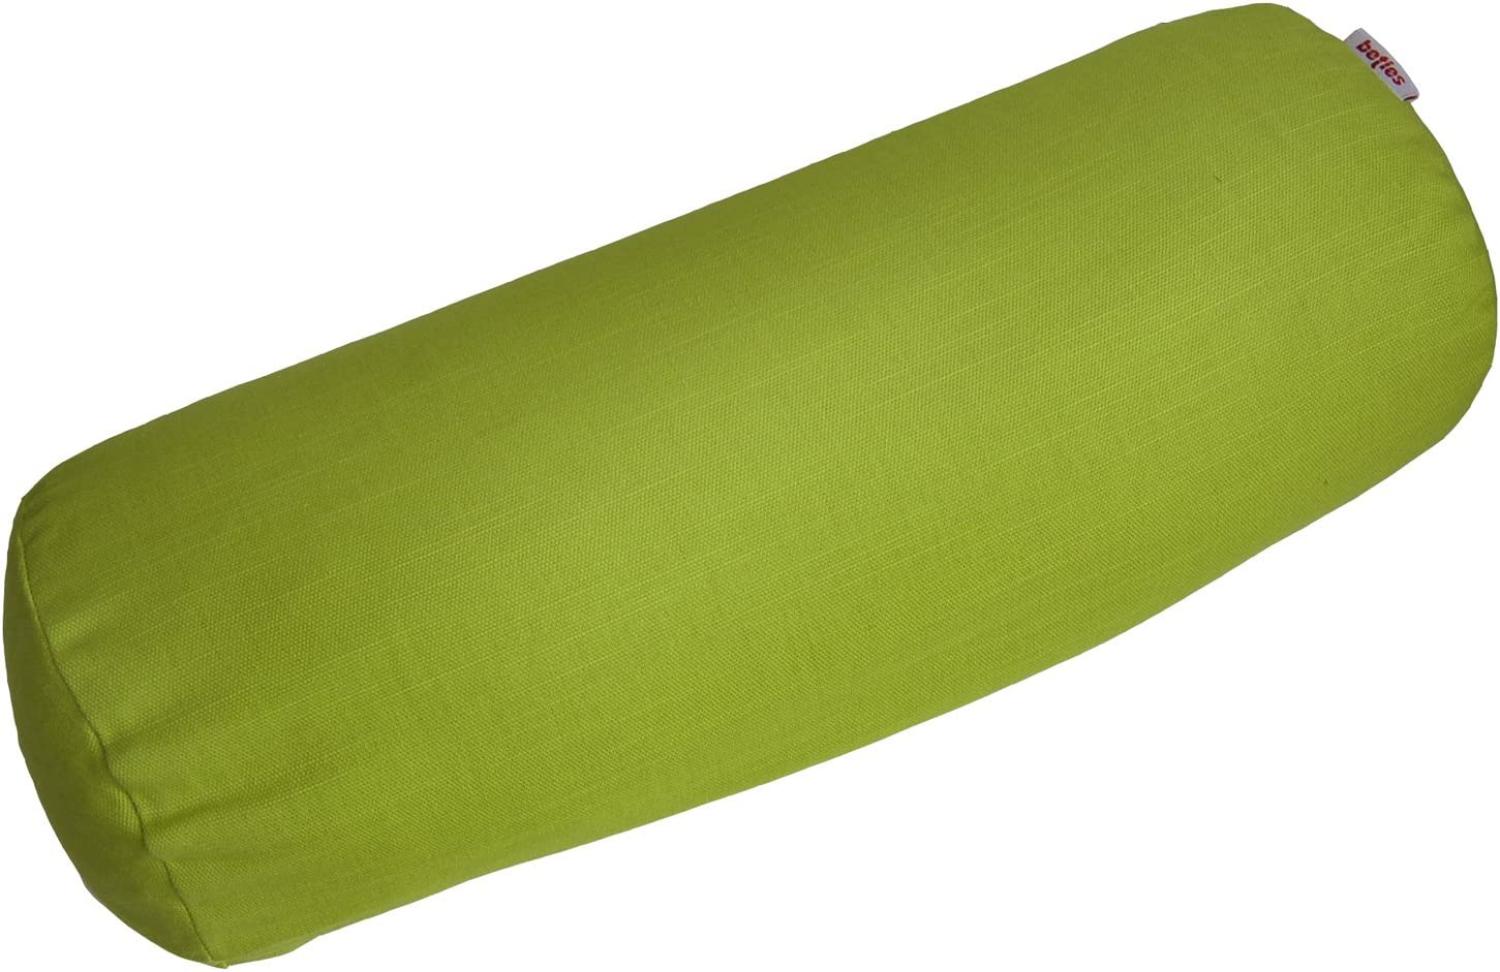 Nackenrollen Hülle ca. 15x40 cm 100% Baumwolle grün beties "Farbenspiel" Bild 1